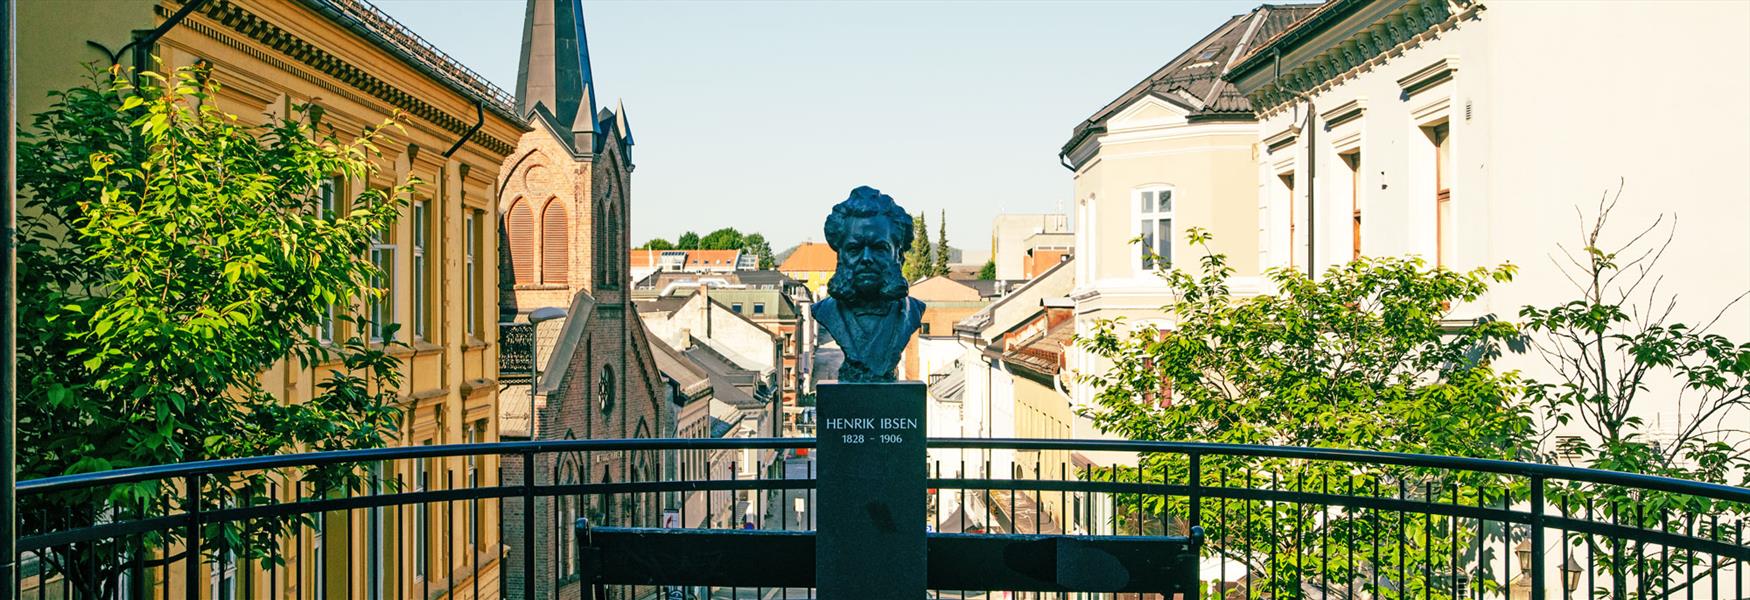 Ibsen bust in Skien